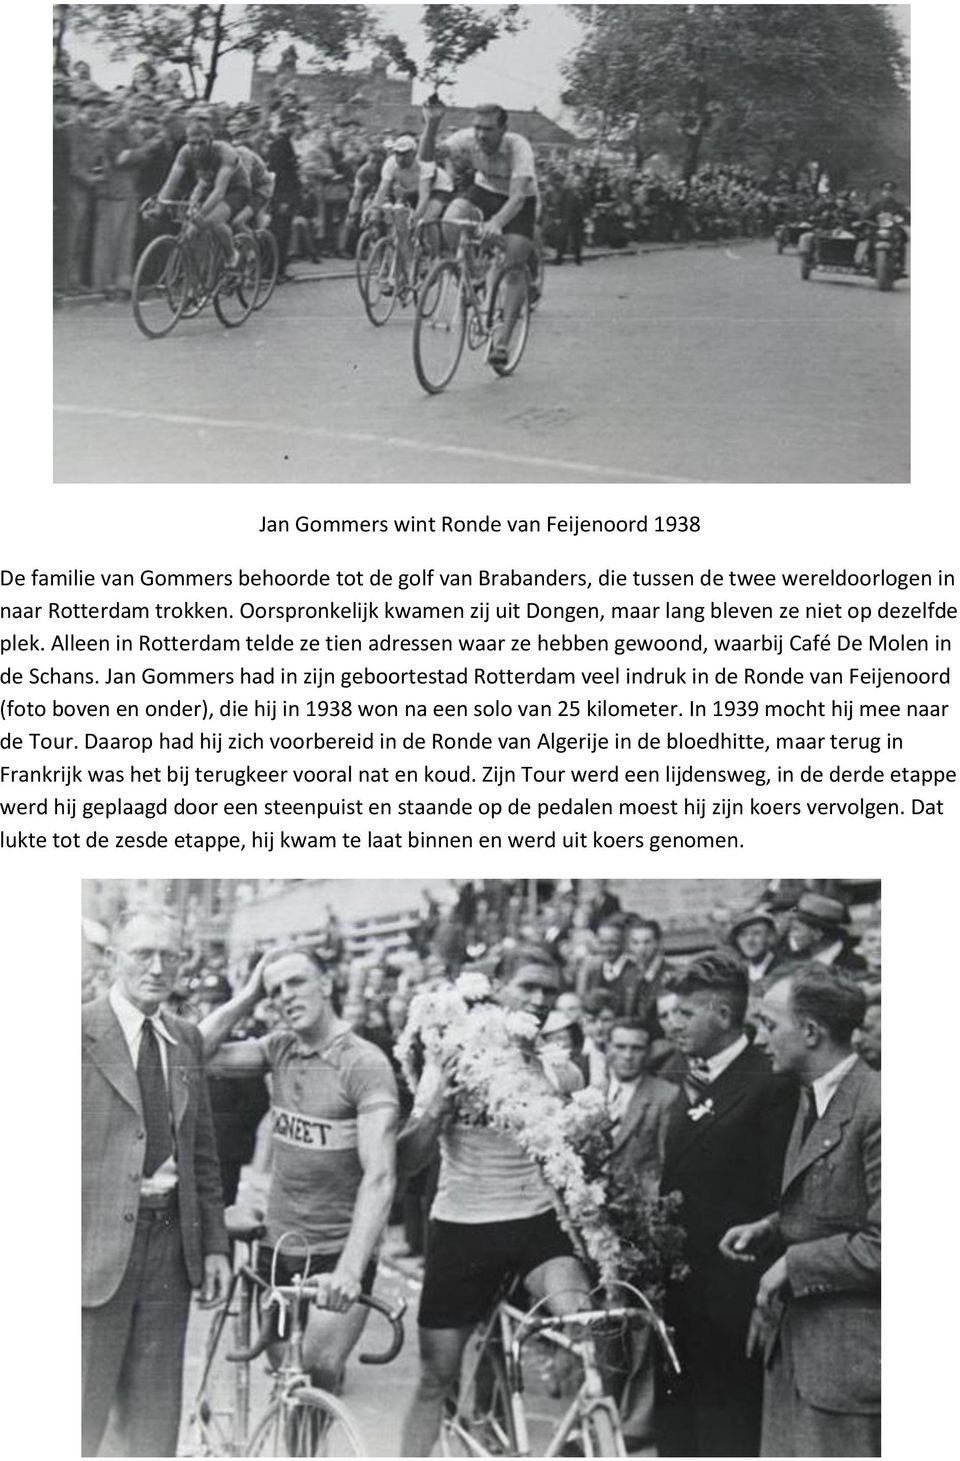 Jan Gommers had in zijn geboortestad Rotterdam veel indruk in de Ronde van Feijenoord (foto boven en onder), die hij in 1938 won na een solo van 25 kilometer. In 1939 mocht hij mee naar de Tour.